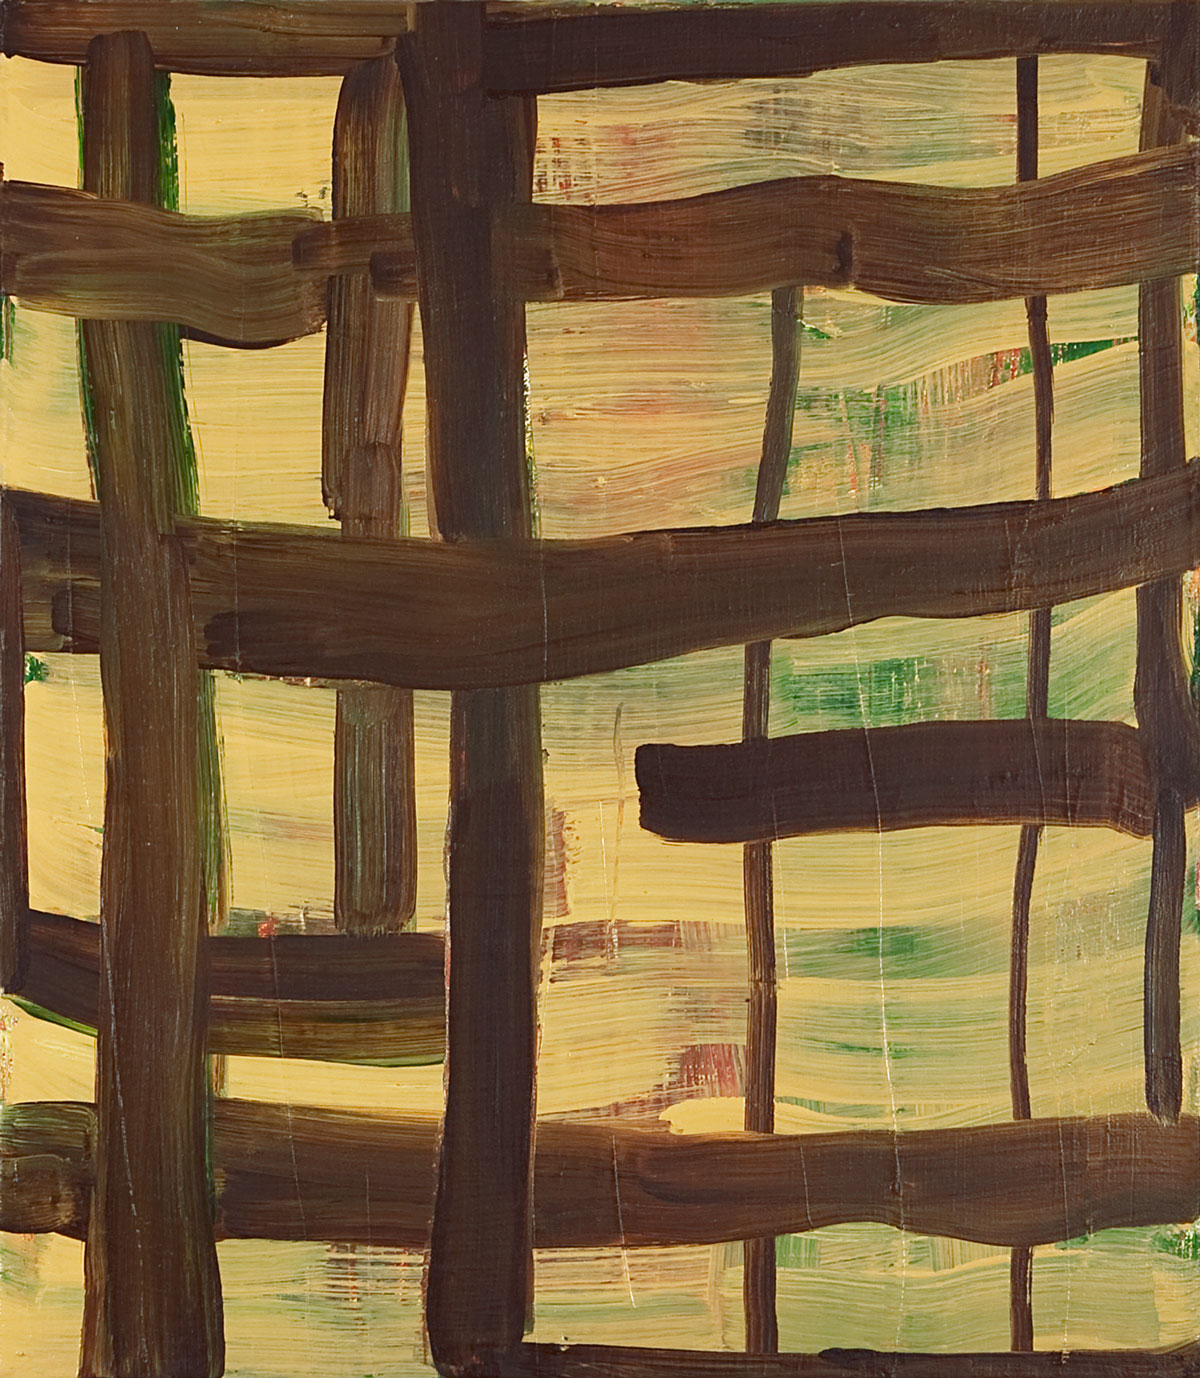   Metaphor , 2010 oil on linen 16 x 14 in. 